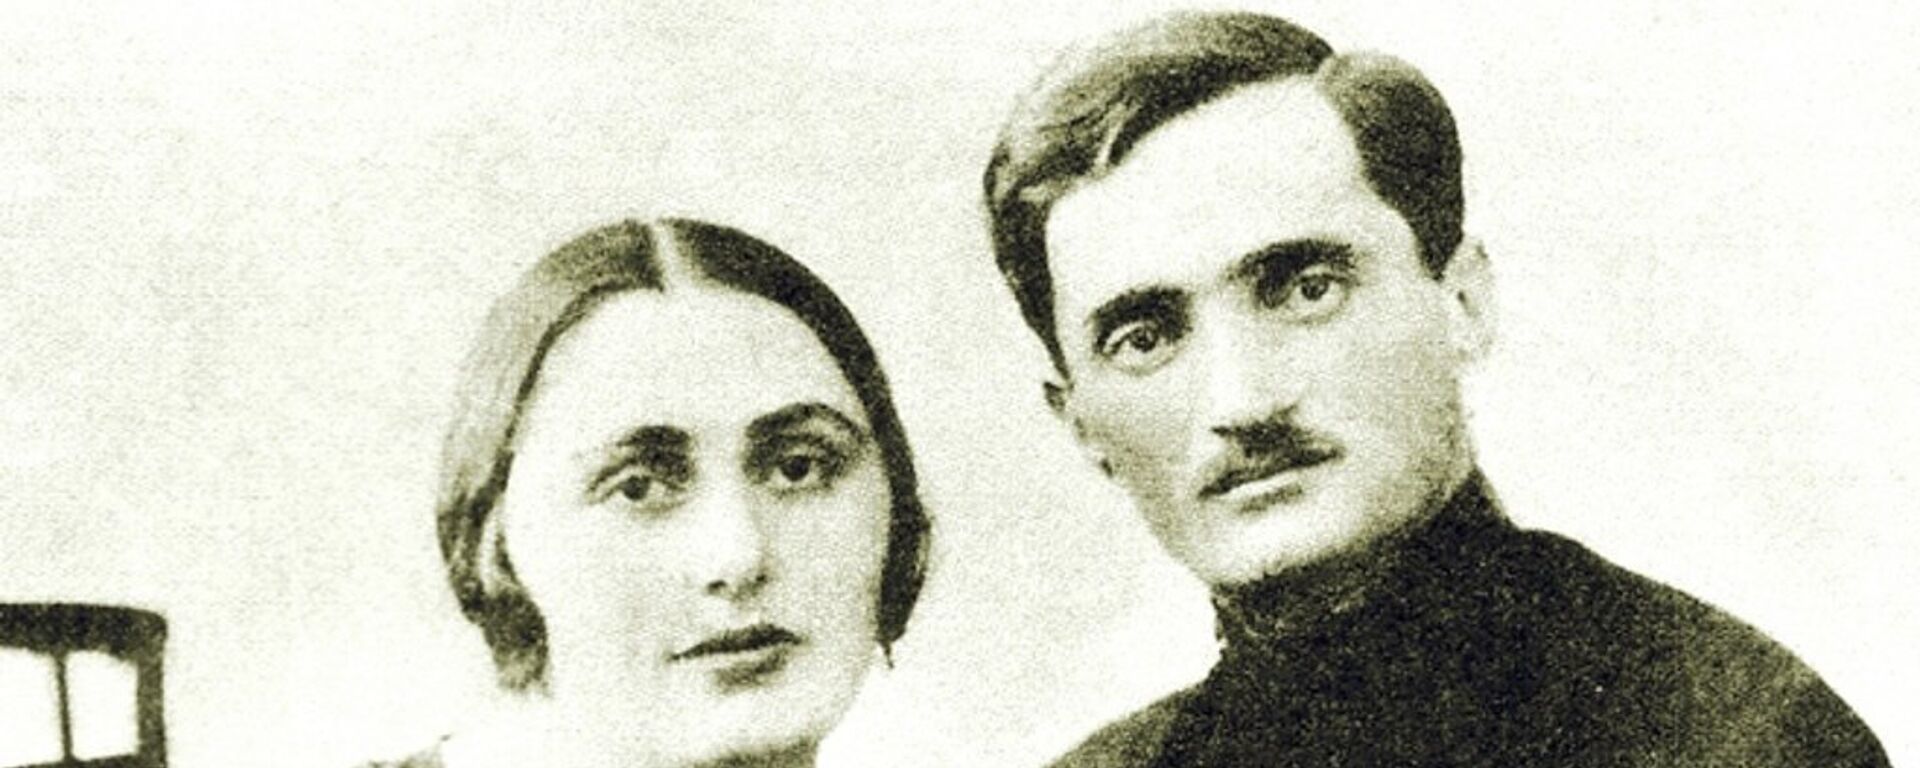 С любимой женой Сарией - Sputnik Абхазия, 1920, 01.05.2016